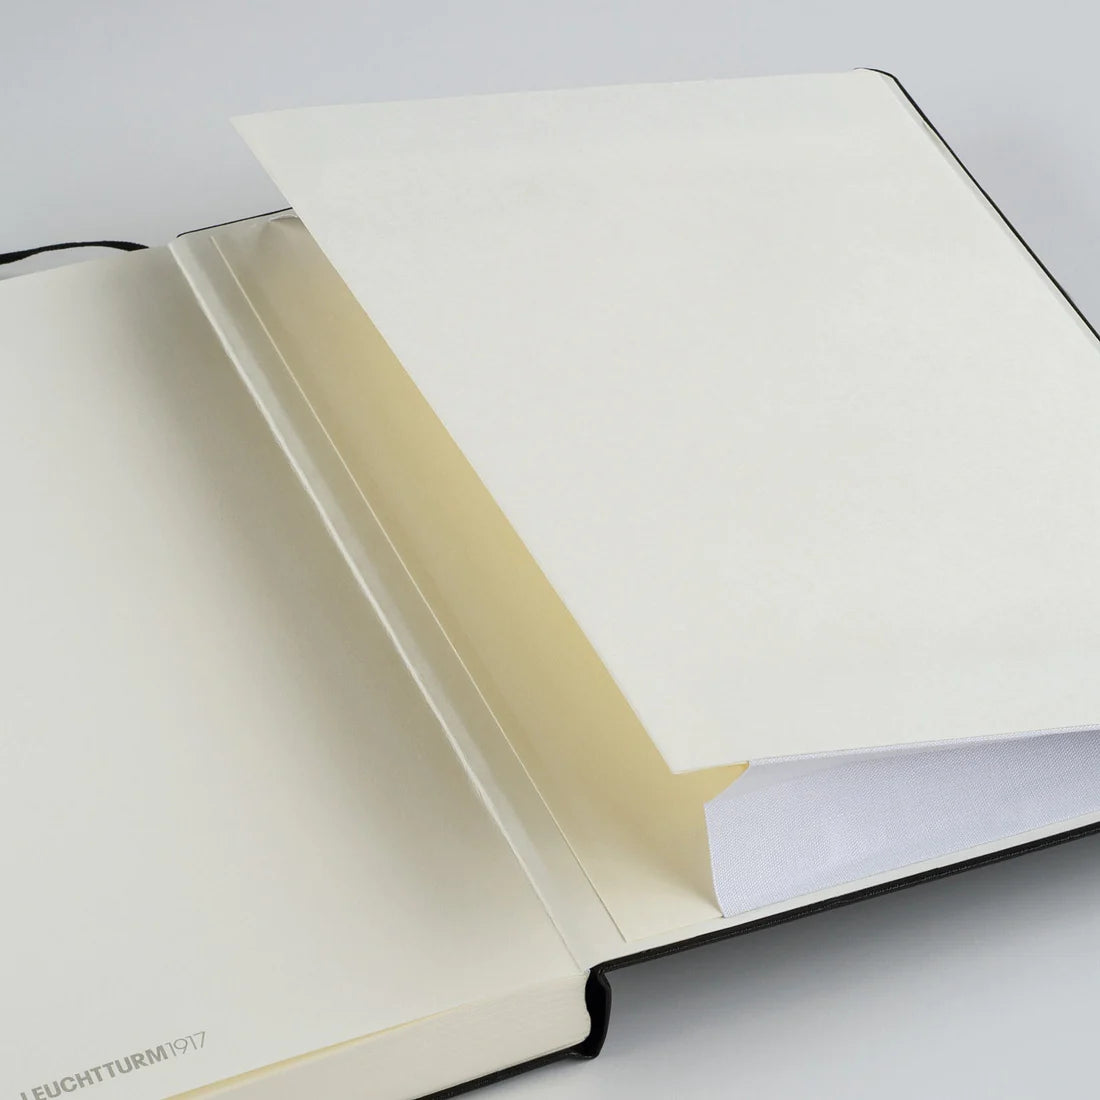 Leuchtturm1917 A5 Medium Hardcover Notebook - Lemon / Plain